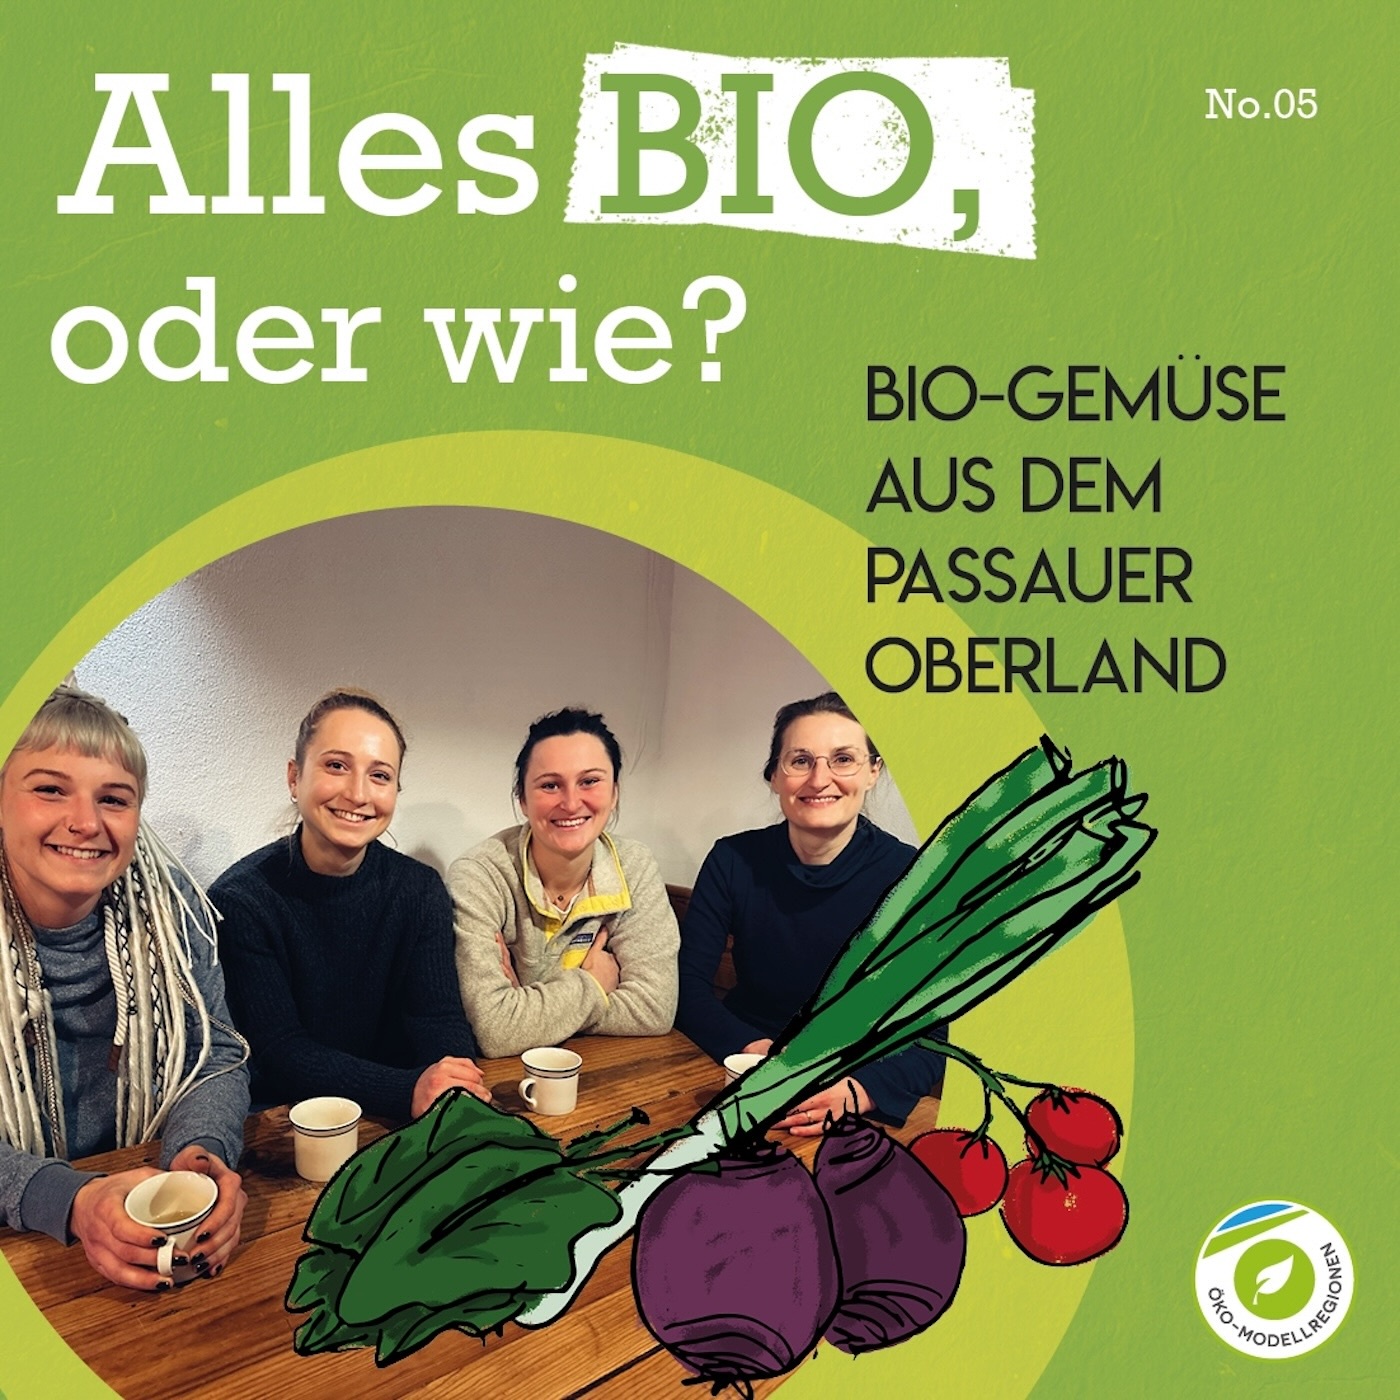 Bio-Gemüse aus dem Passauer Oberland